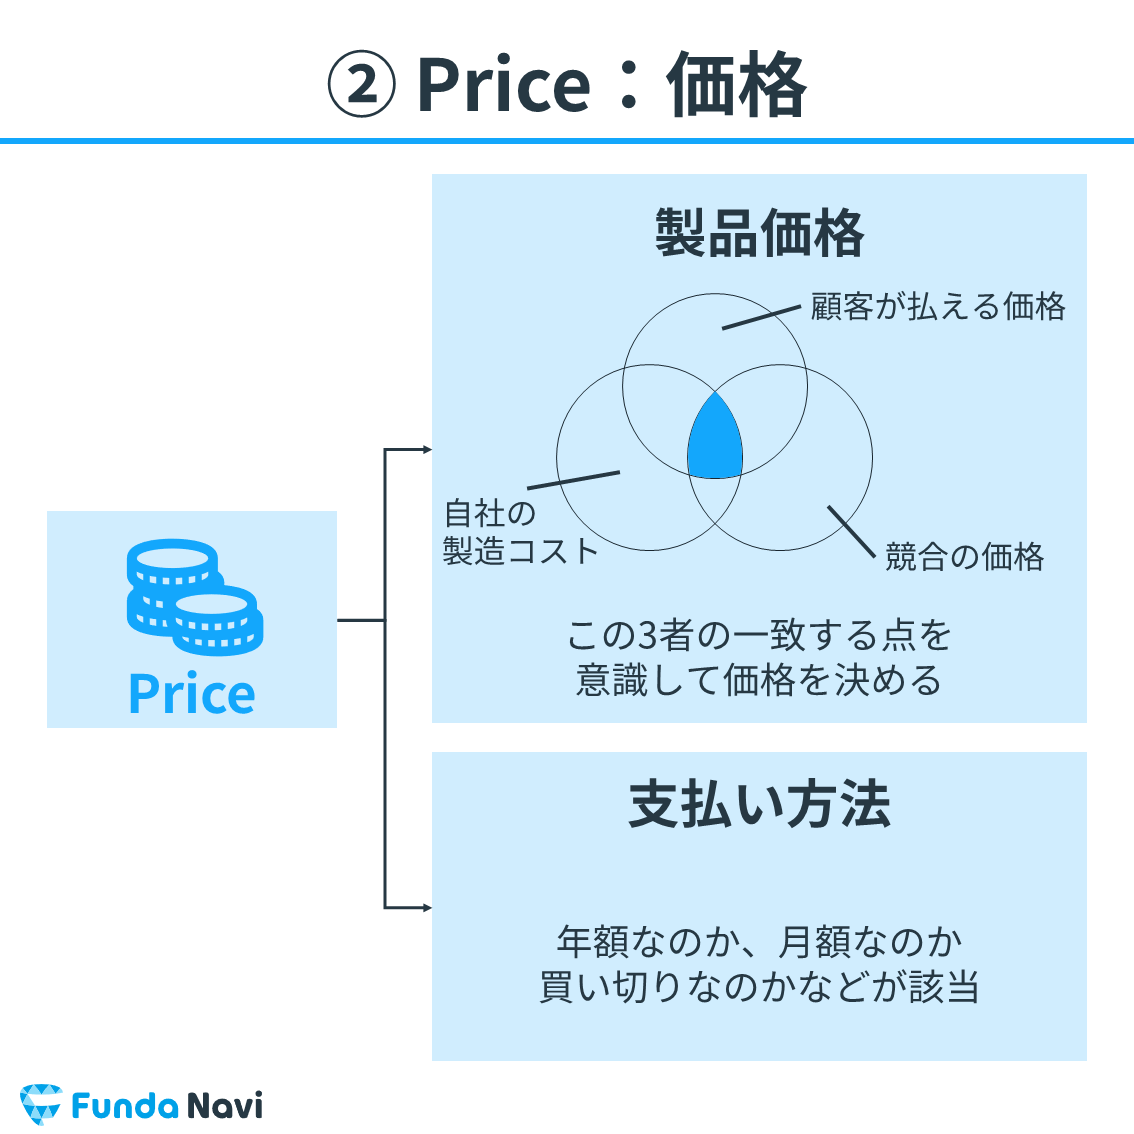 マーケティングミックス（4P）：Price（価格）